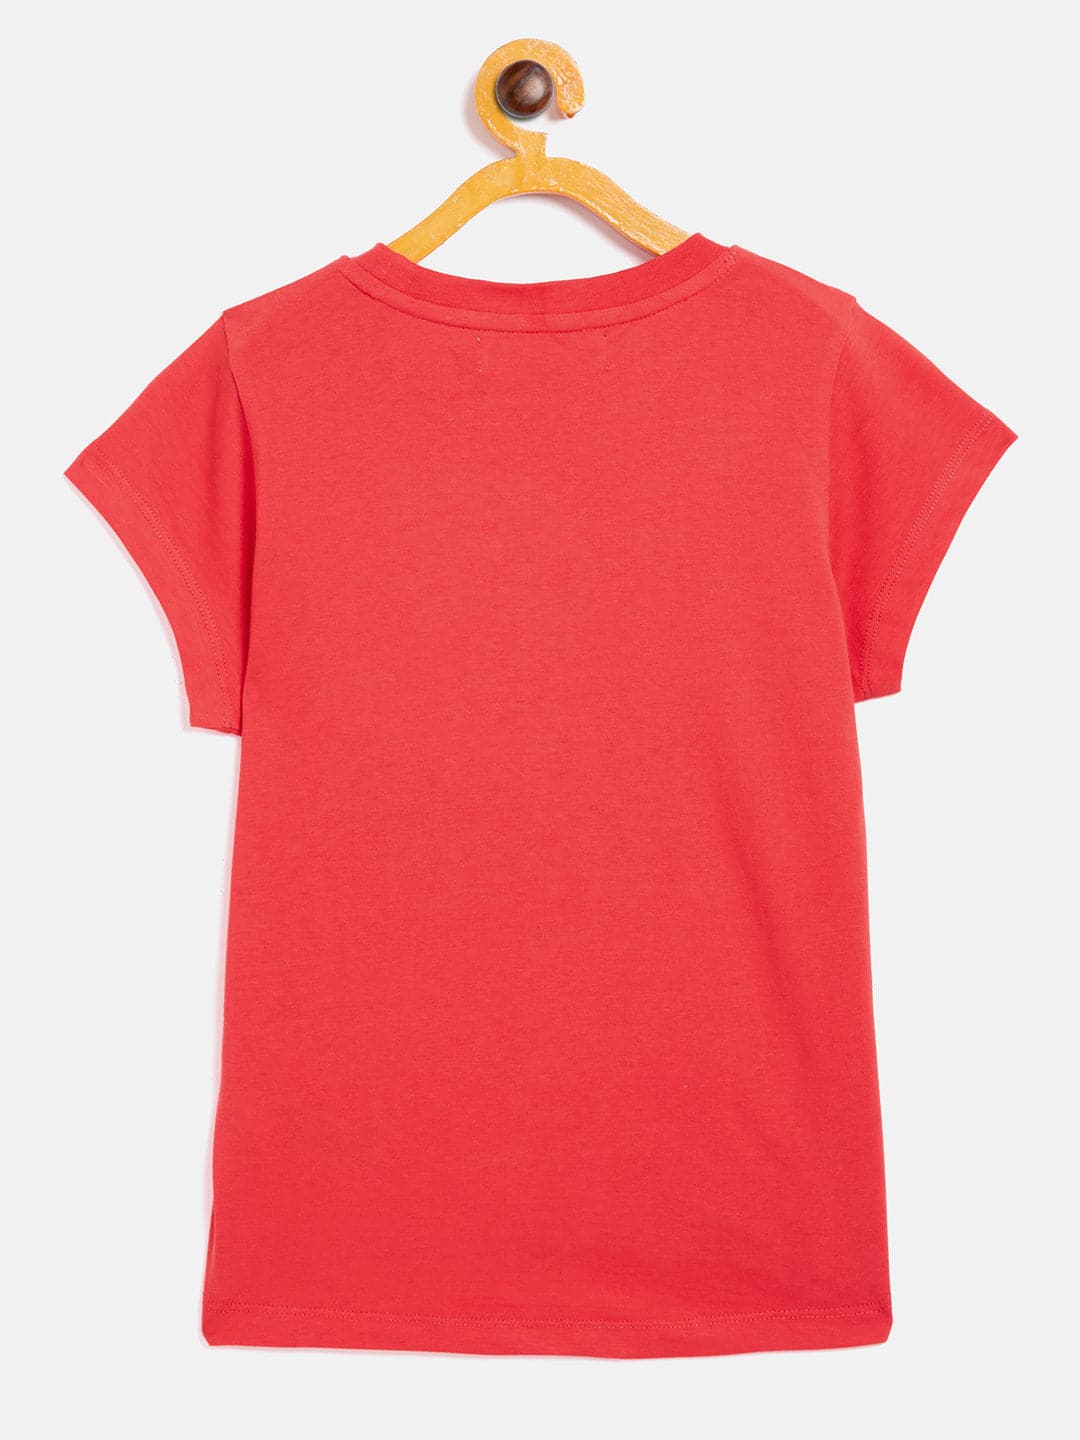 Girl's Red Forever or Never T-Shirt - LYUSH KIDS